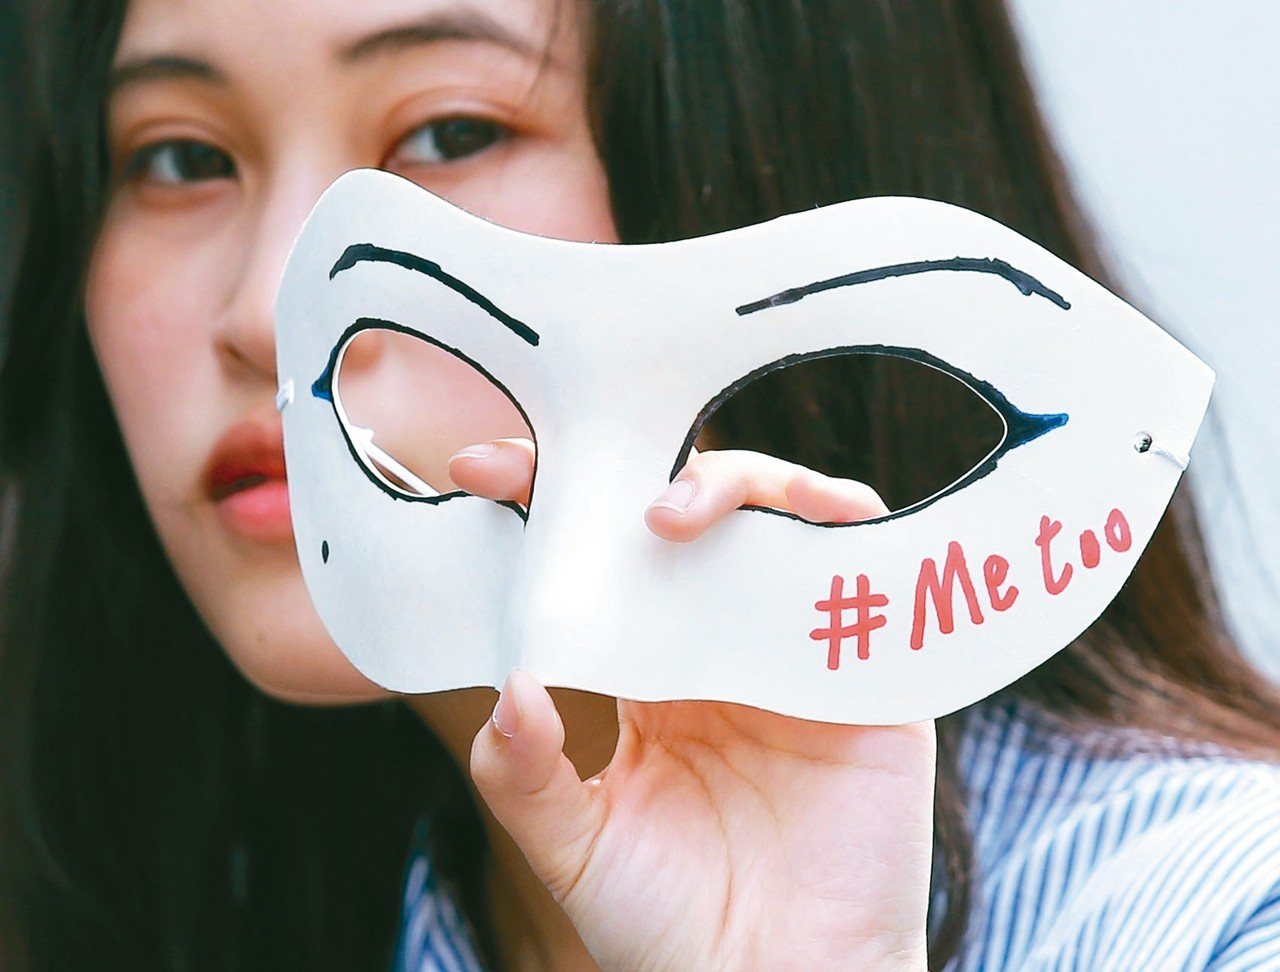 全球掀起「MeToo」反性騷擾浪潮，台灣醫界類似醜聞也層出不窮。21日台灣舉辦首場響應#MeToo大遊行，吸引上千人參與，民眾戴上面具聲援性騷擾受害者(見圖)。